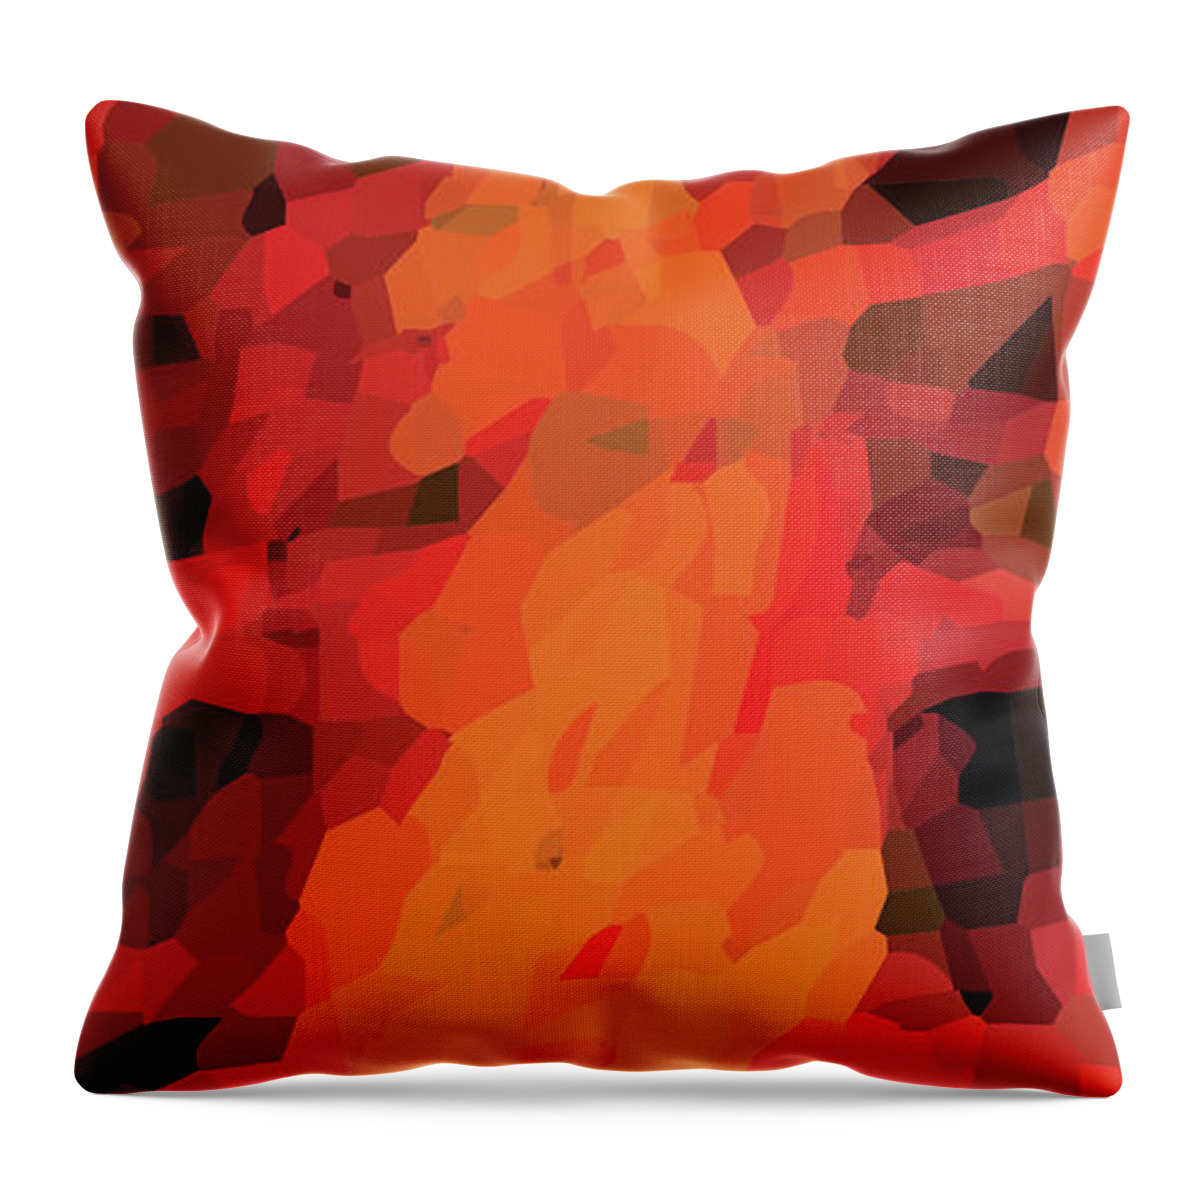 Fire Throw Pillow featuring the digital art Fire by Joe Roache